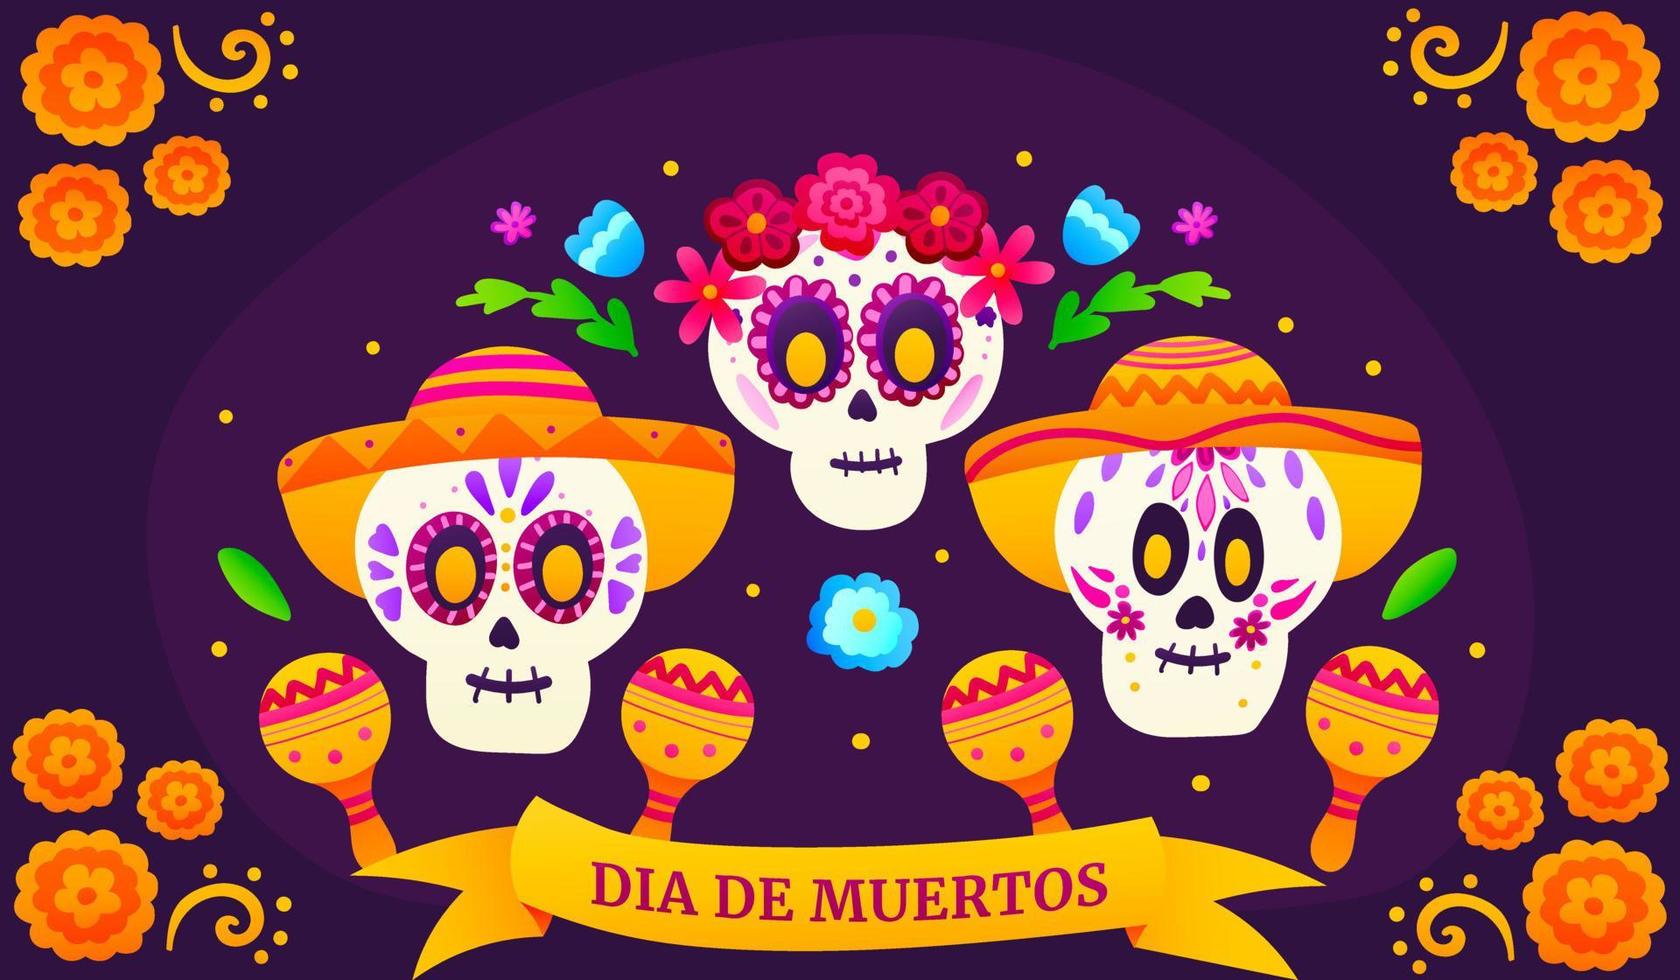 dia de los muertos grußbanner mit bunten zuckerschädeln und blumen, mexikanischer tag der toten mit niedlichen skeletten im karikaturstil auf dunklem hintergrund mit ringelblumen, festfeier vektor